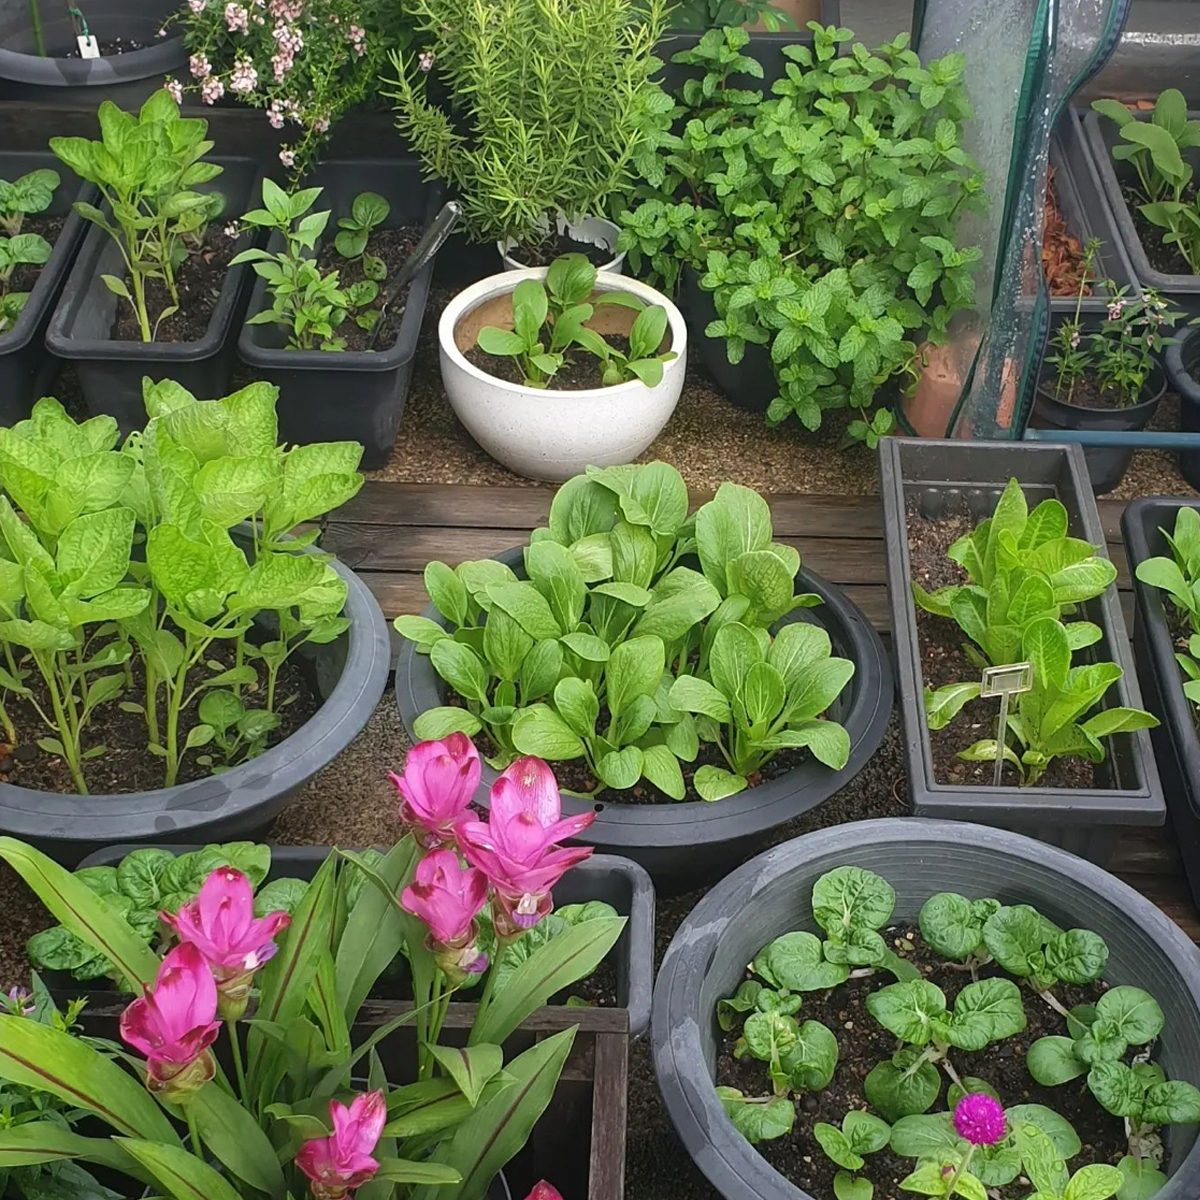 https://www.familyhandyman.com/wp-content/uploads/2022/06/Balcony-Container-Vegetable-Garden-courtesy-@bendi.kangkong-via-instagram.jpg?fit=700%2C700